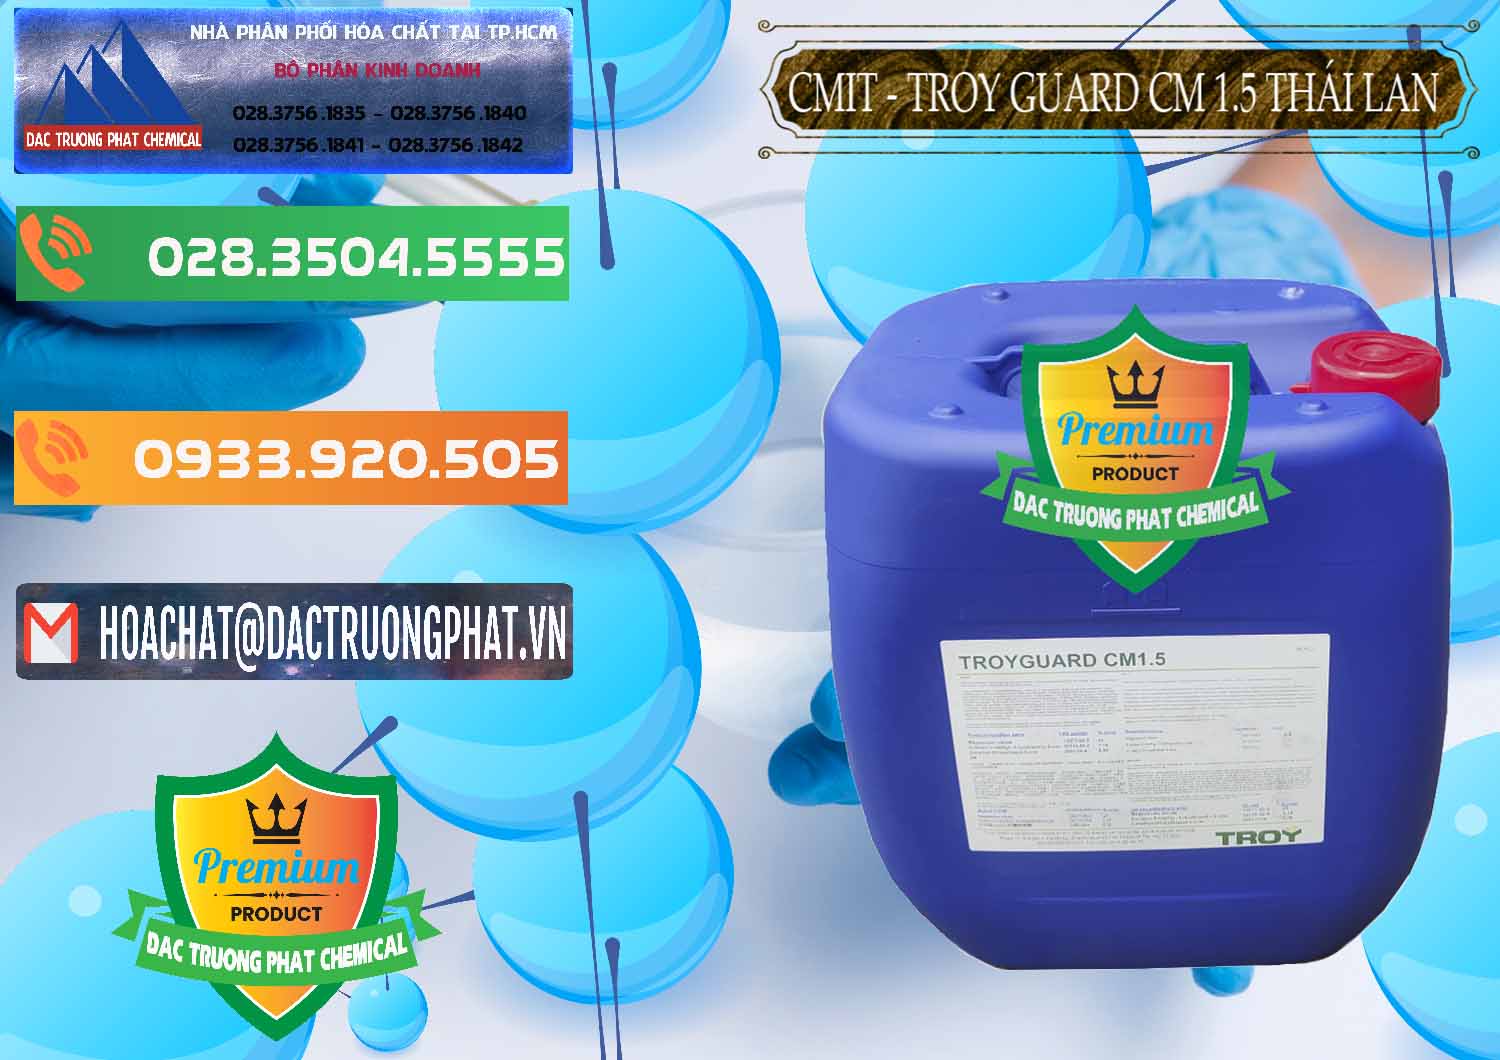 Cty chuyên phân phối & bán Chất Bảo Quản CMIT Thái Lan Thailand - 0326 - Nơi chuyên bán và cung cấp hóa chất tại TP.HCM - hoachatxulynuoc.com.vn